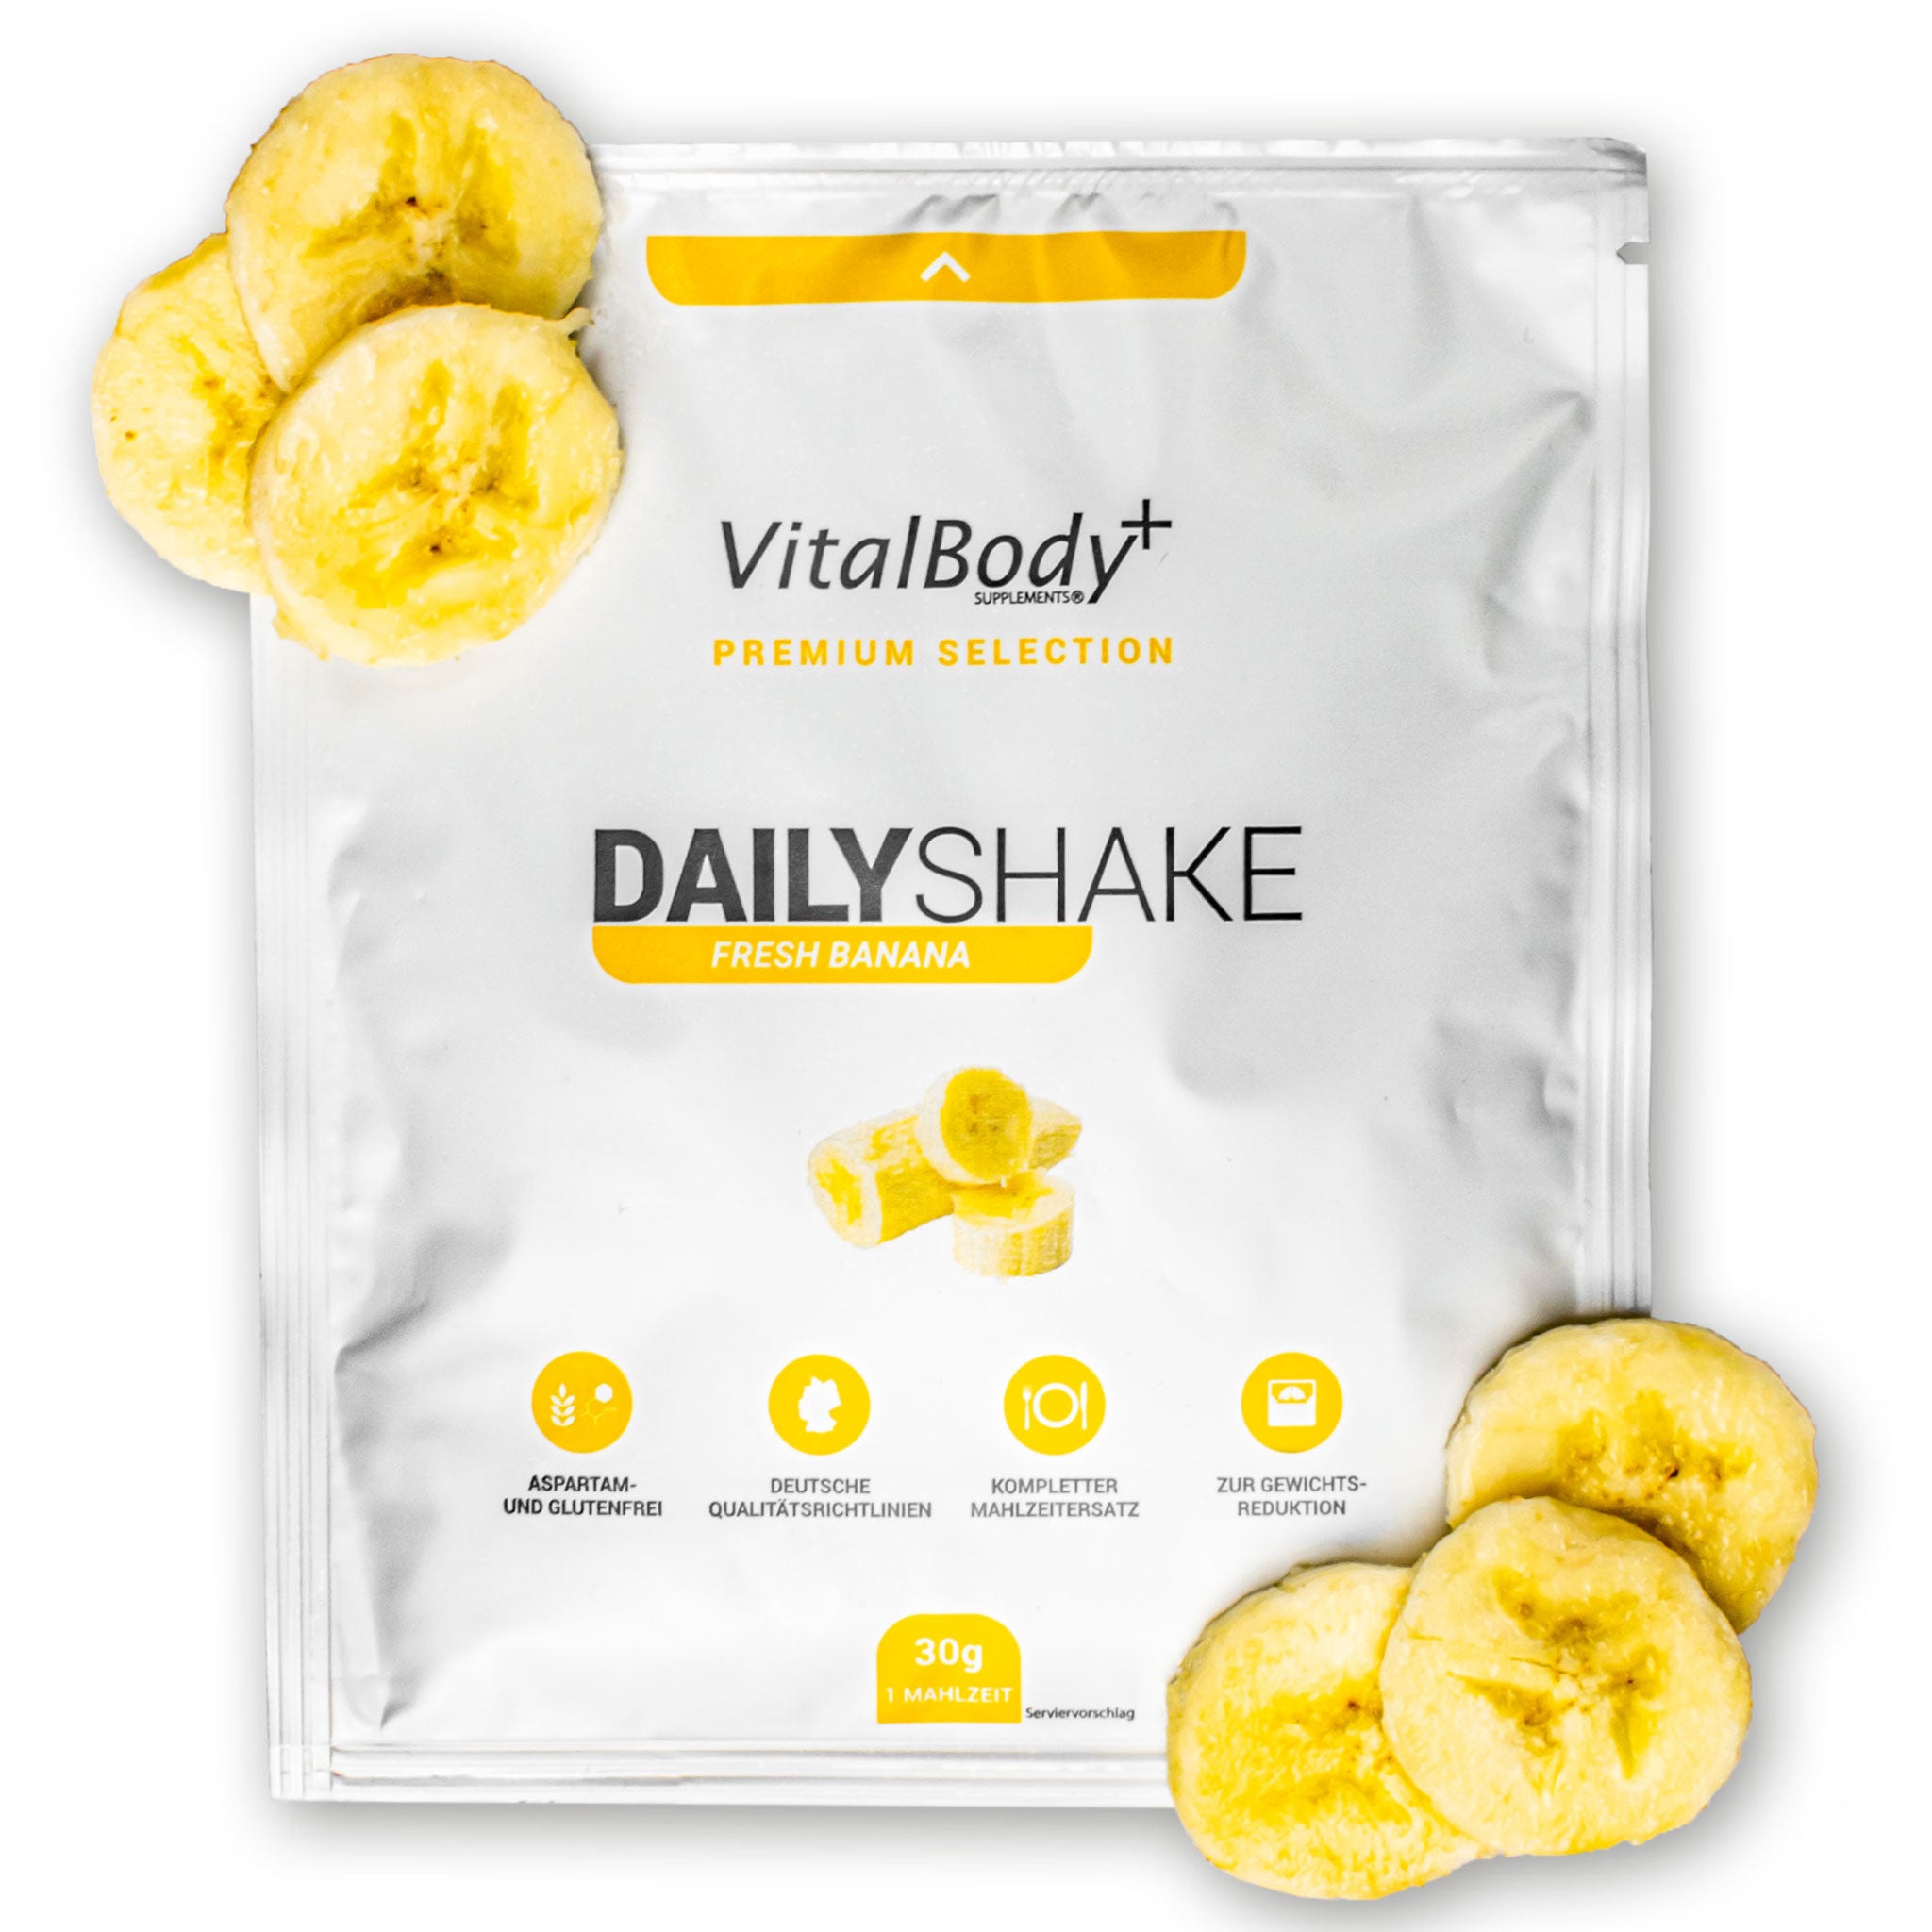 DailyShake To Go Pack Fresh Banana mit Bananenscheiben belegt auf weißem Hintergrund